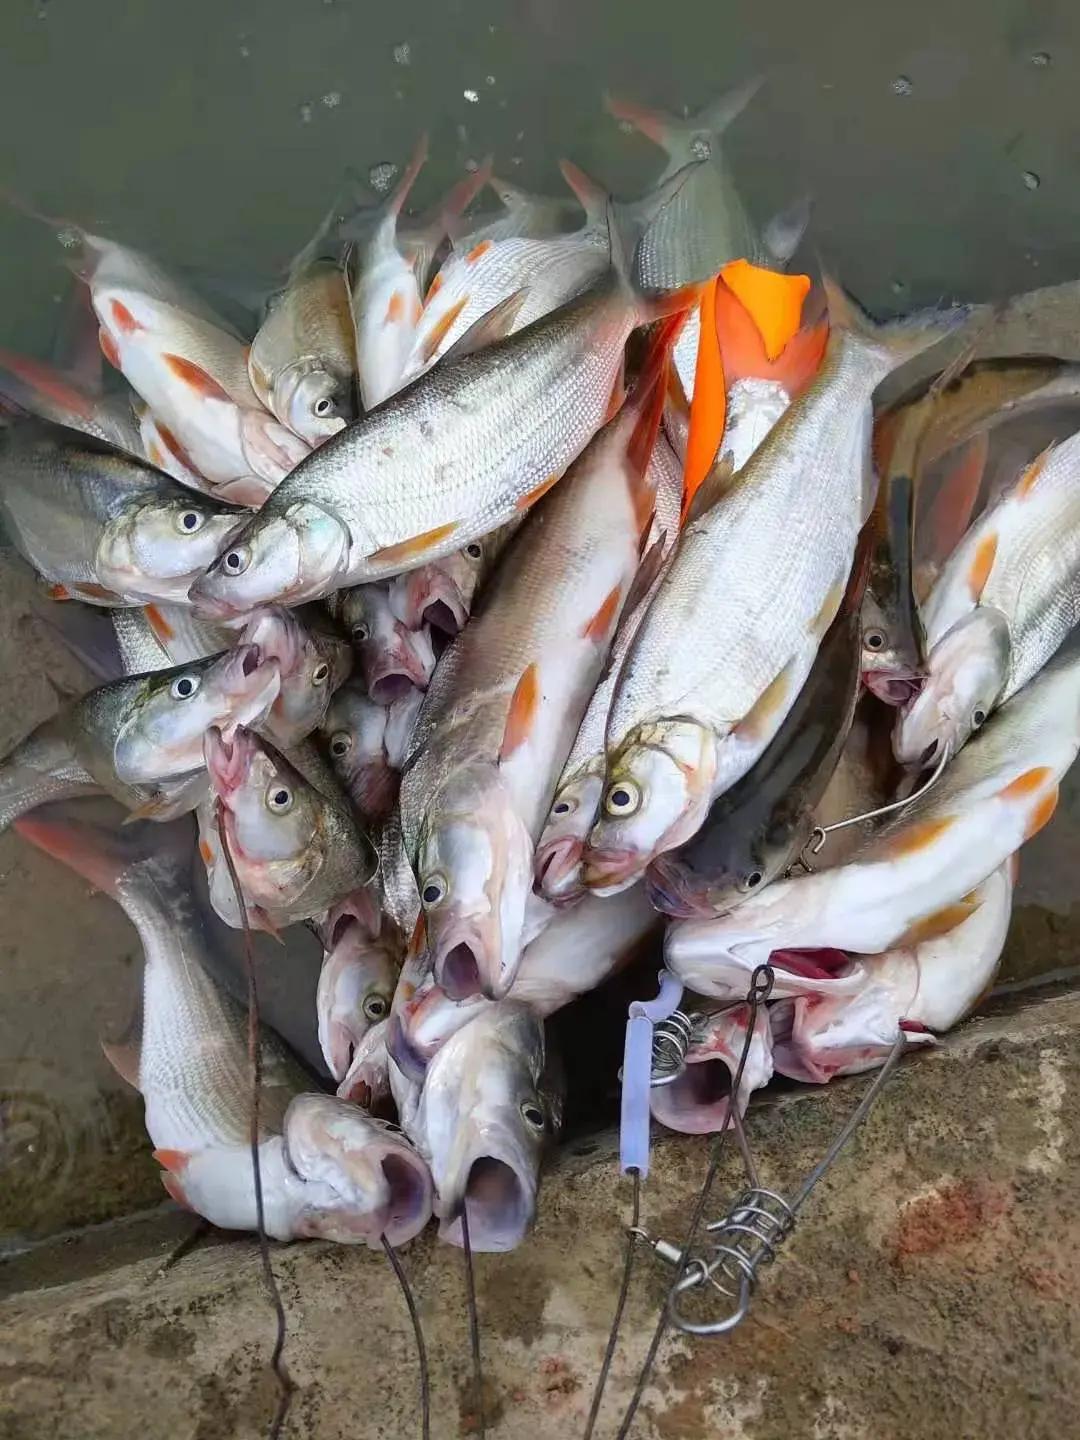 贵州清水江红尾鱼泛滥,有人半天钓了几十斤,红尾多了危害很大?